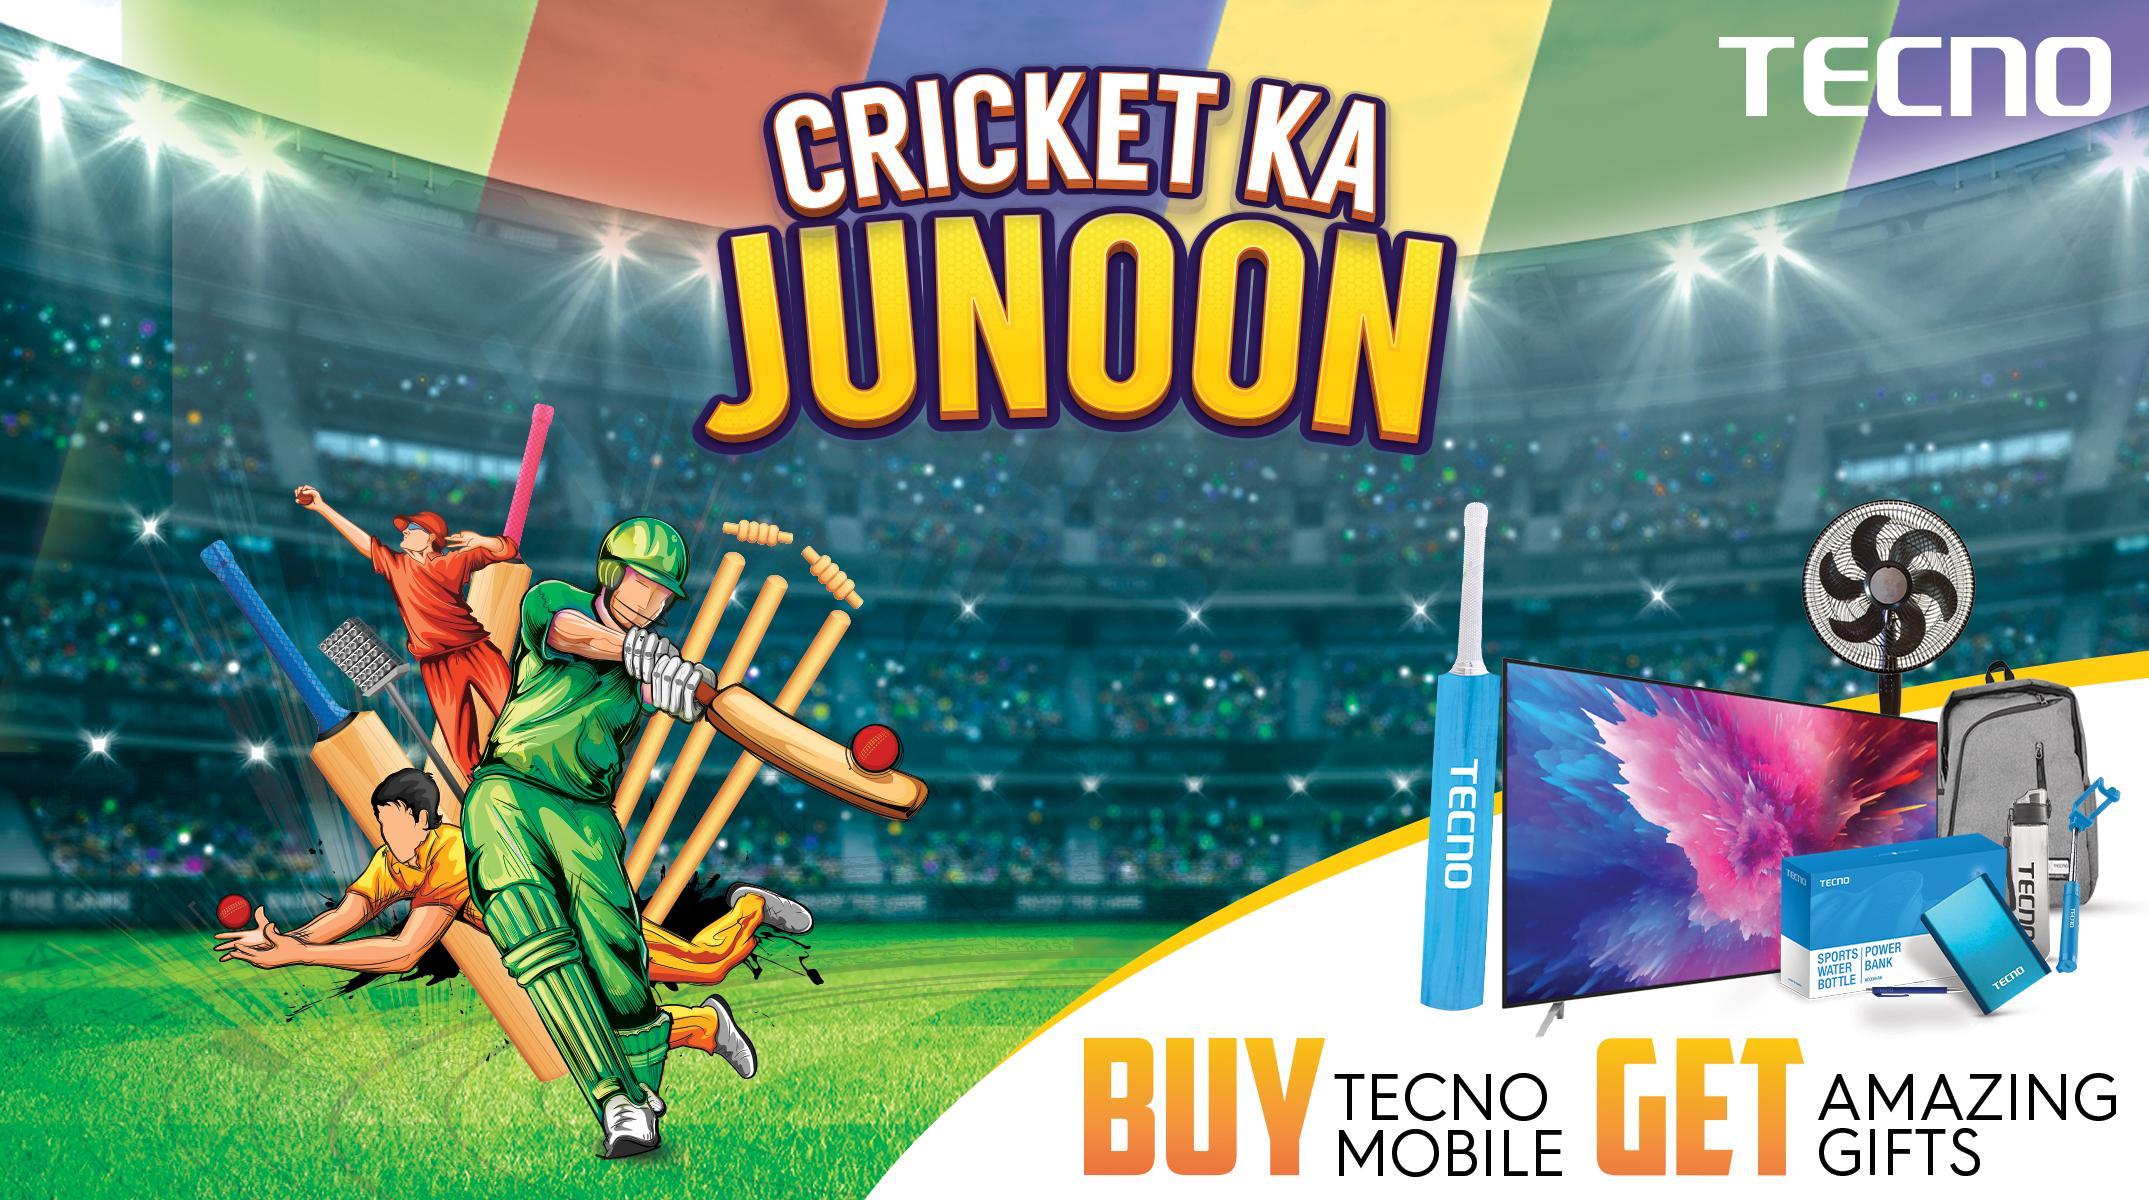 TECNO treats fans with “Cricket Ka Junoon” activities across major cities